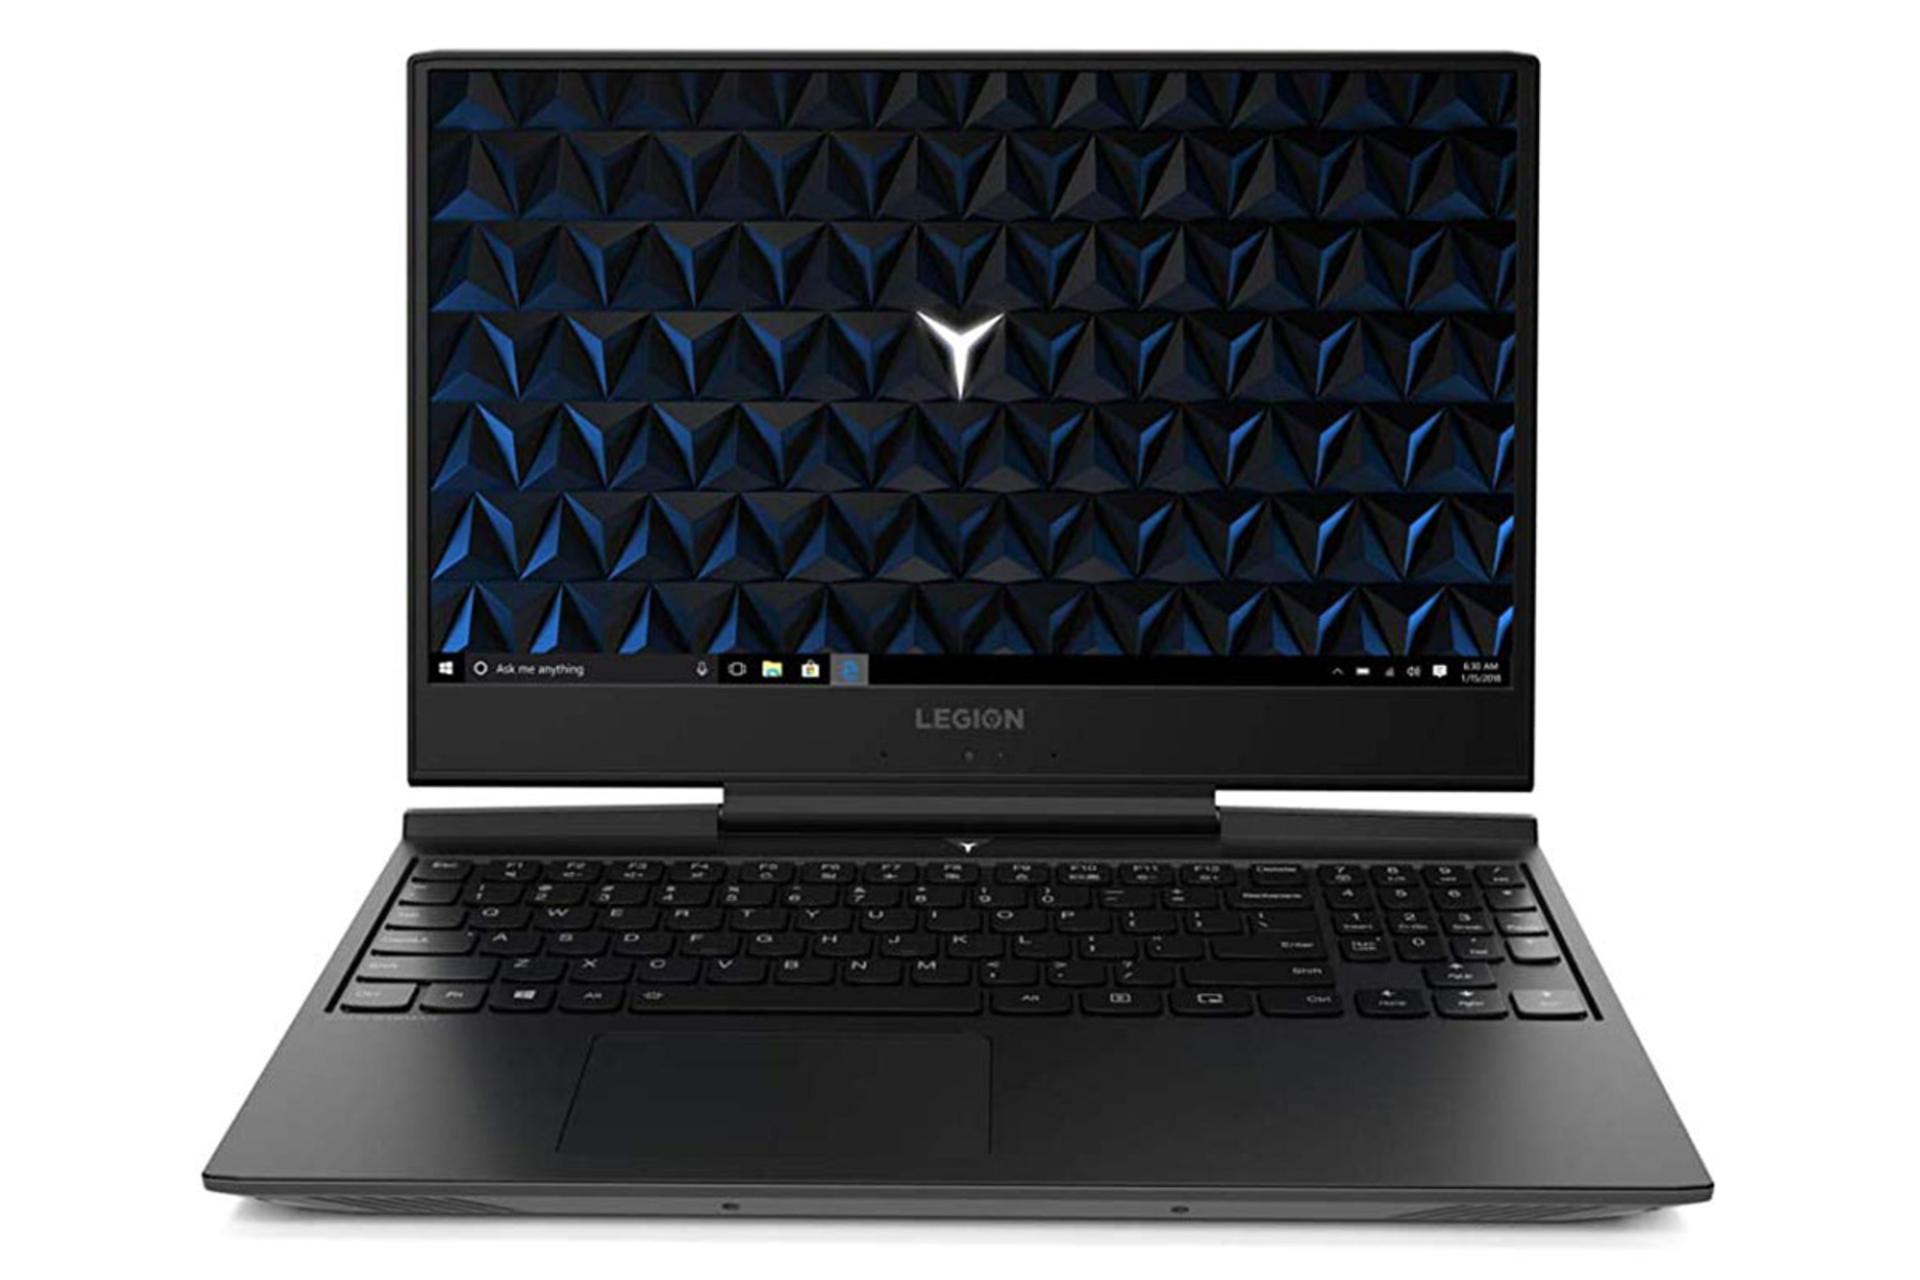 لپ تاپ لنوو لیژن 7000 از نمای جلو با صفحه روشن